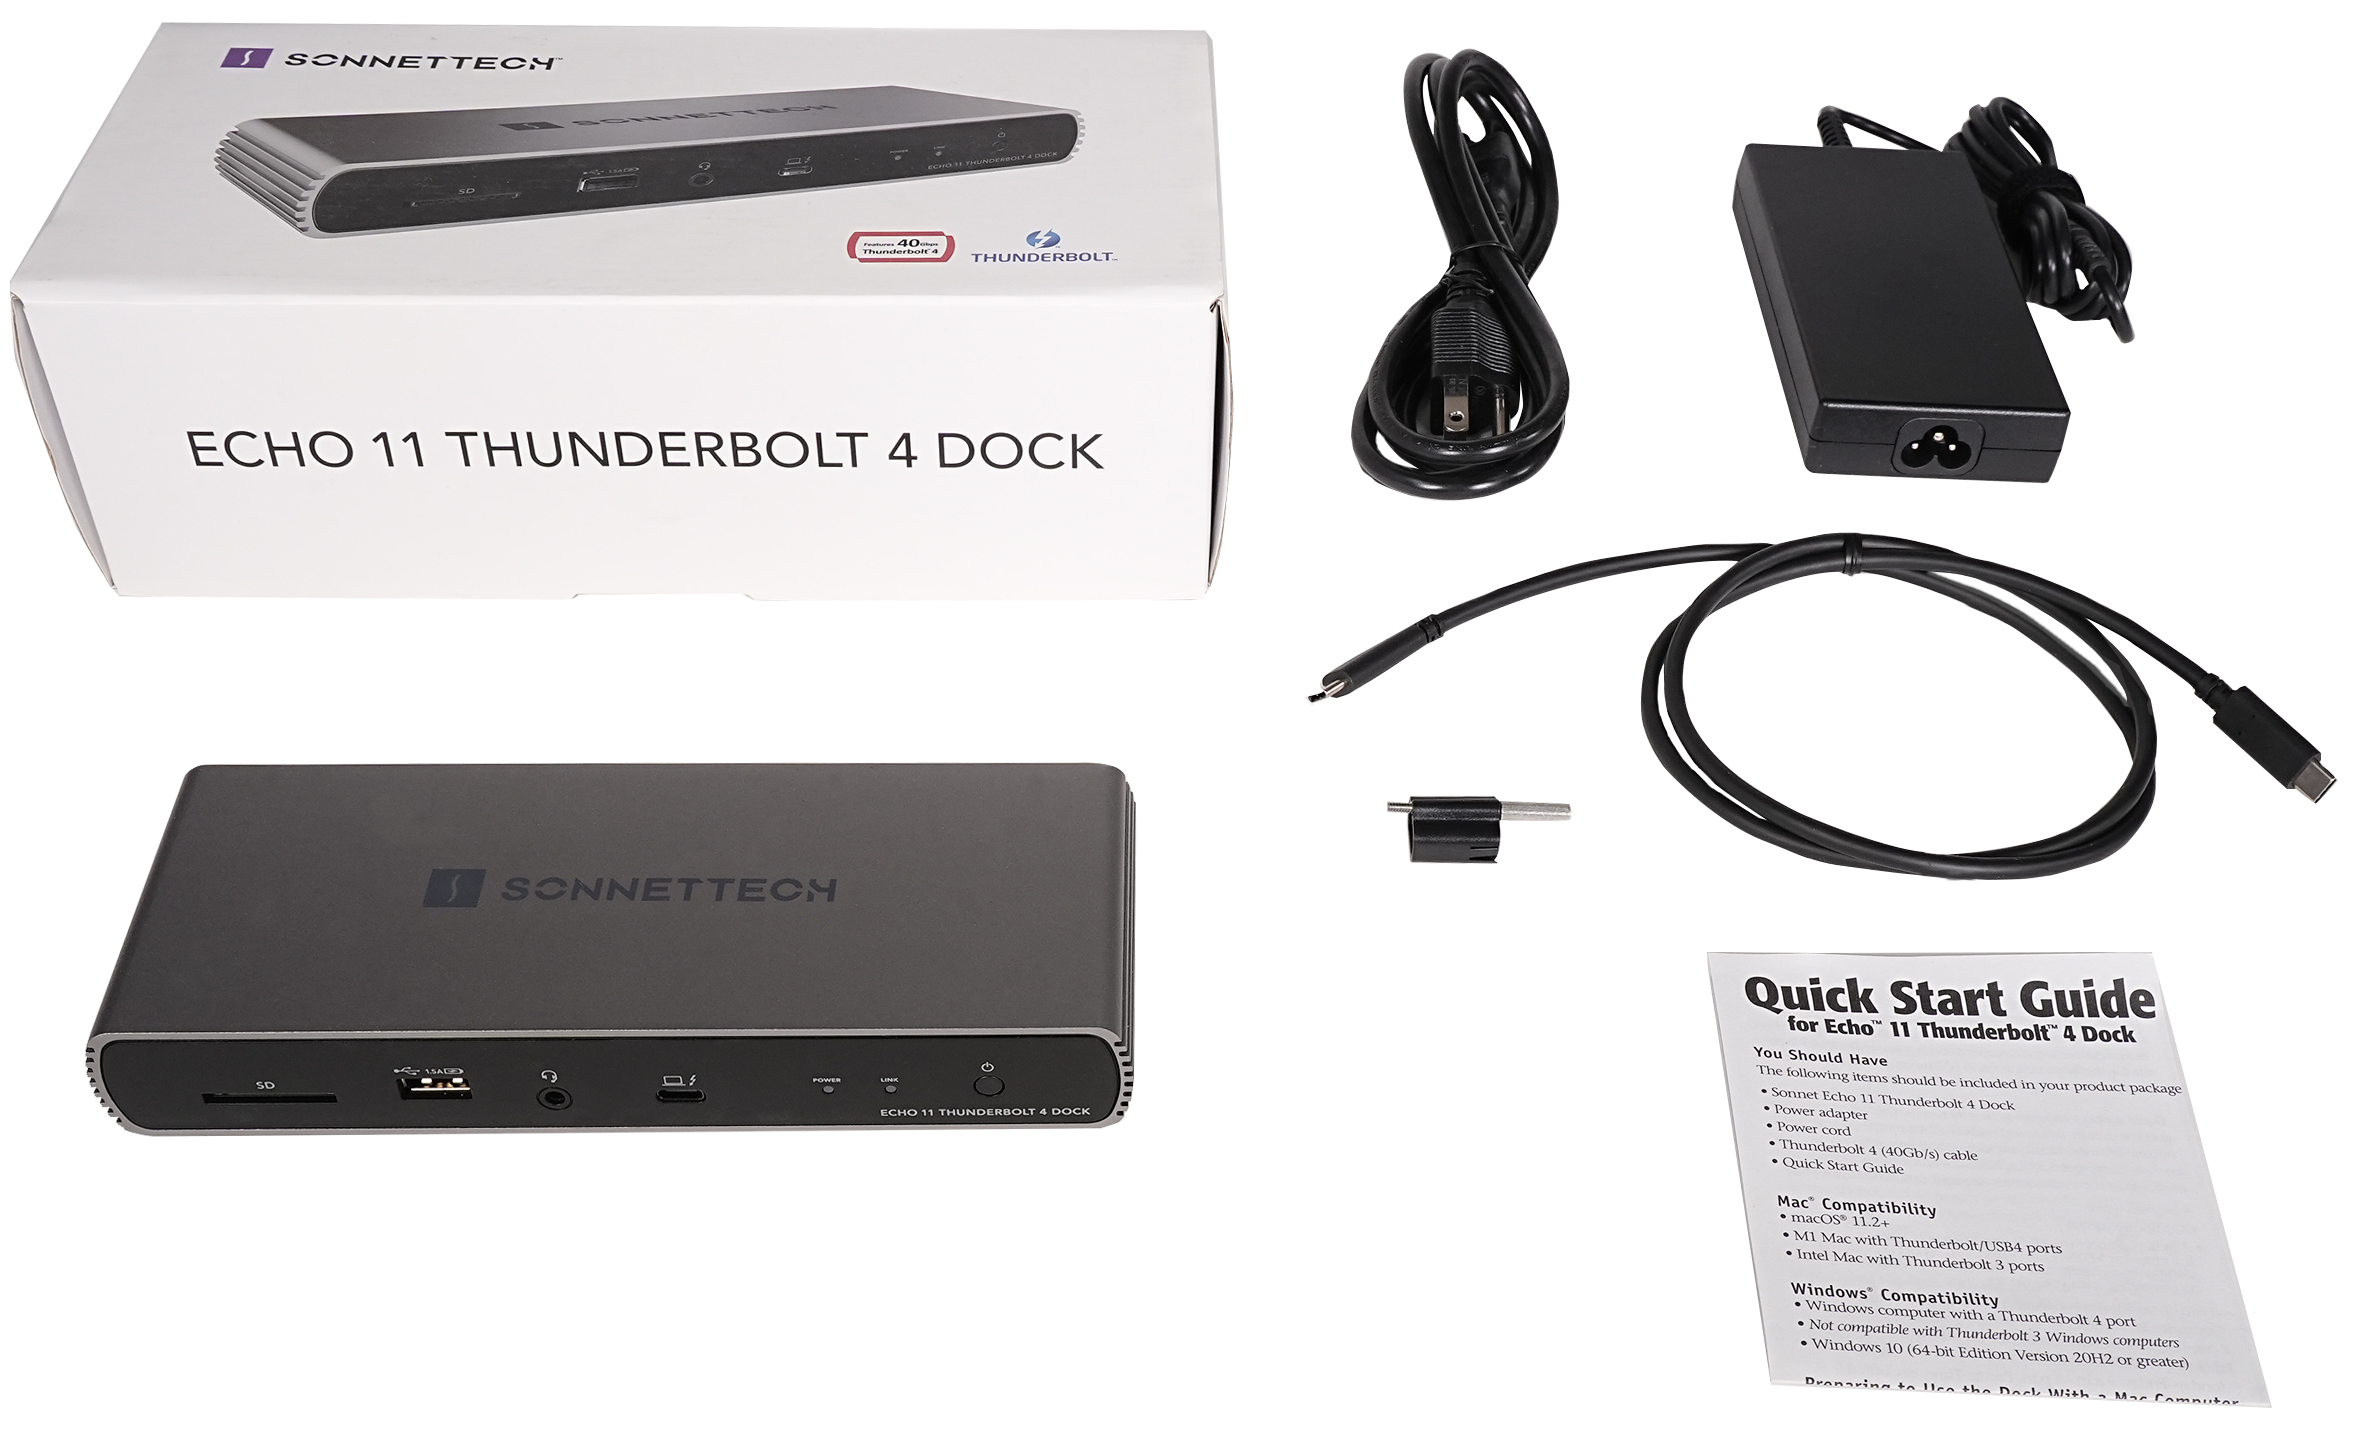 Echo 11 Thunderbolt 4 Dock Packaging